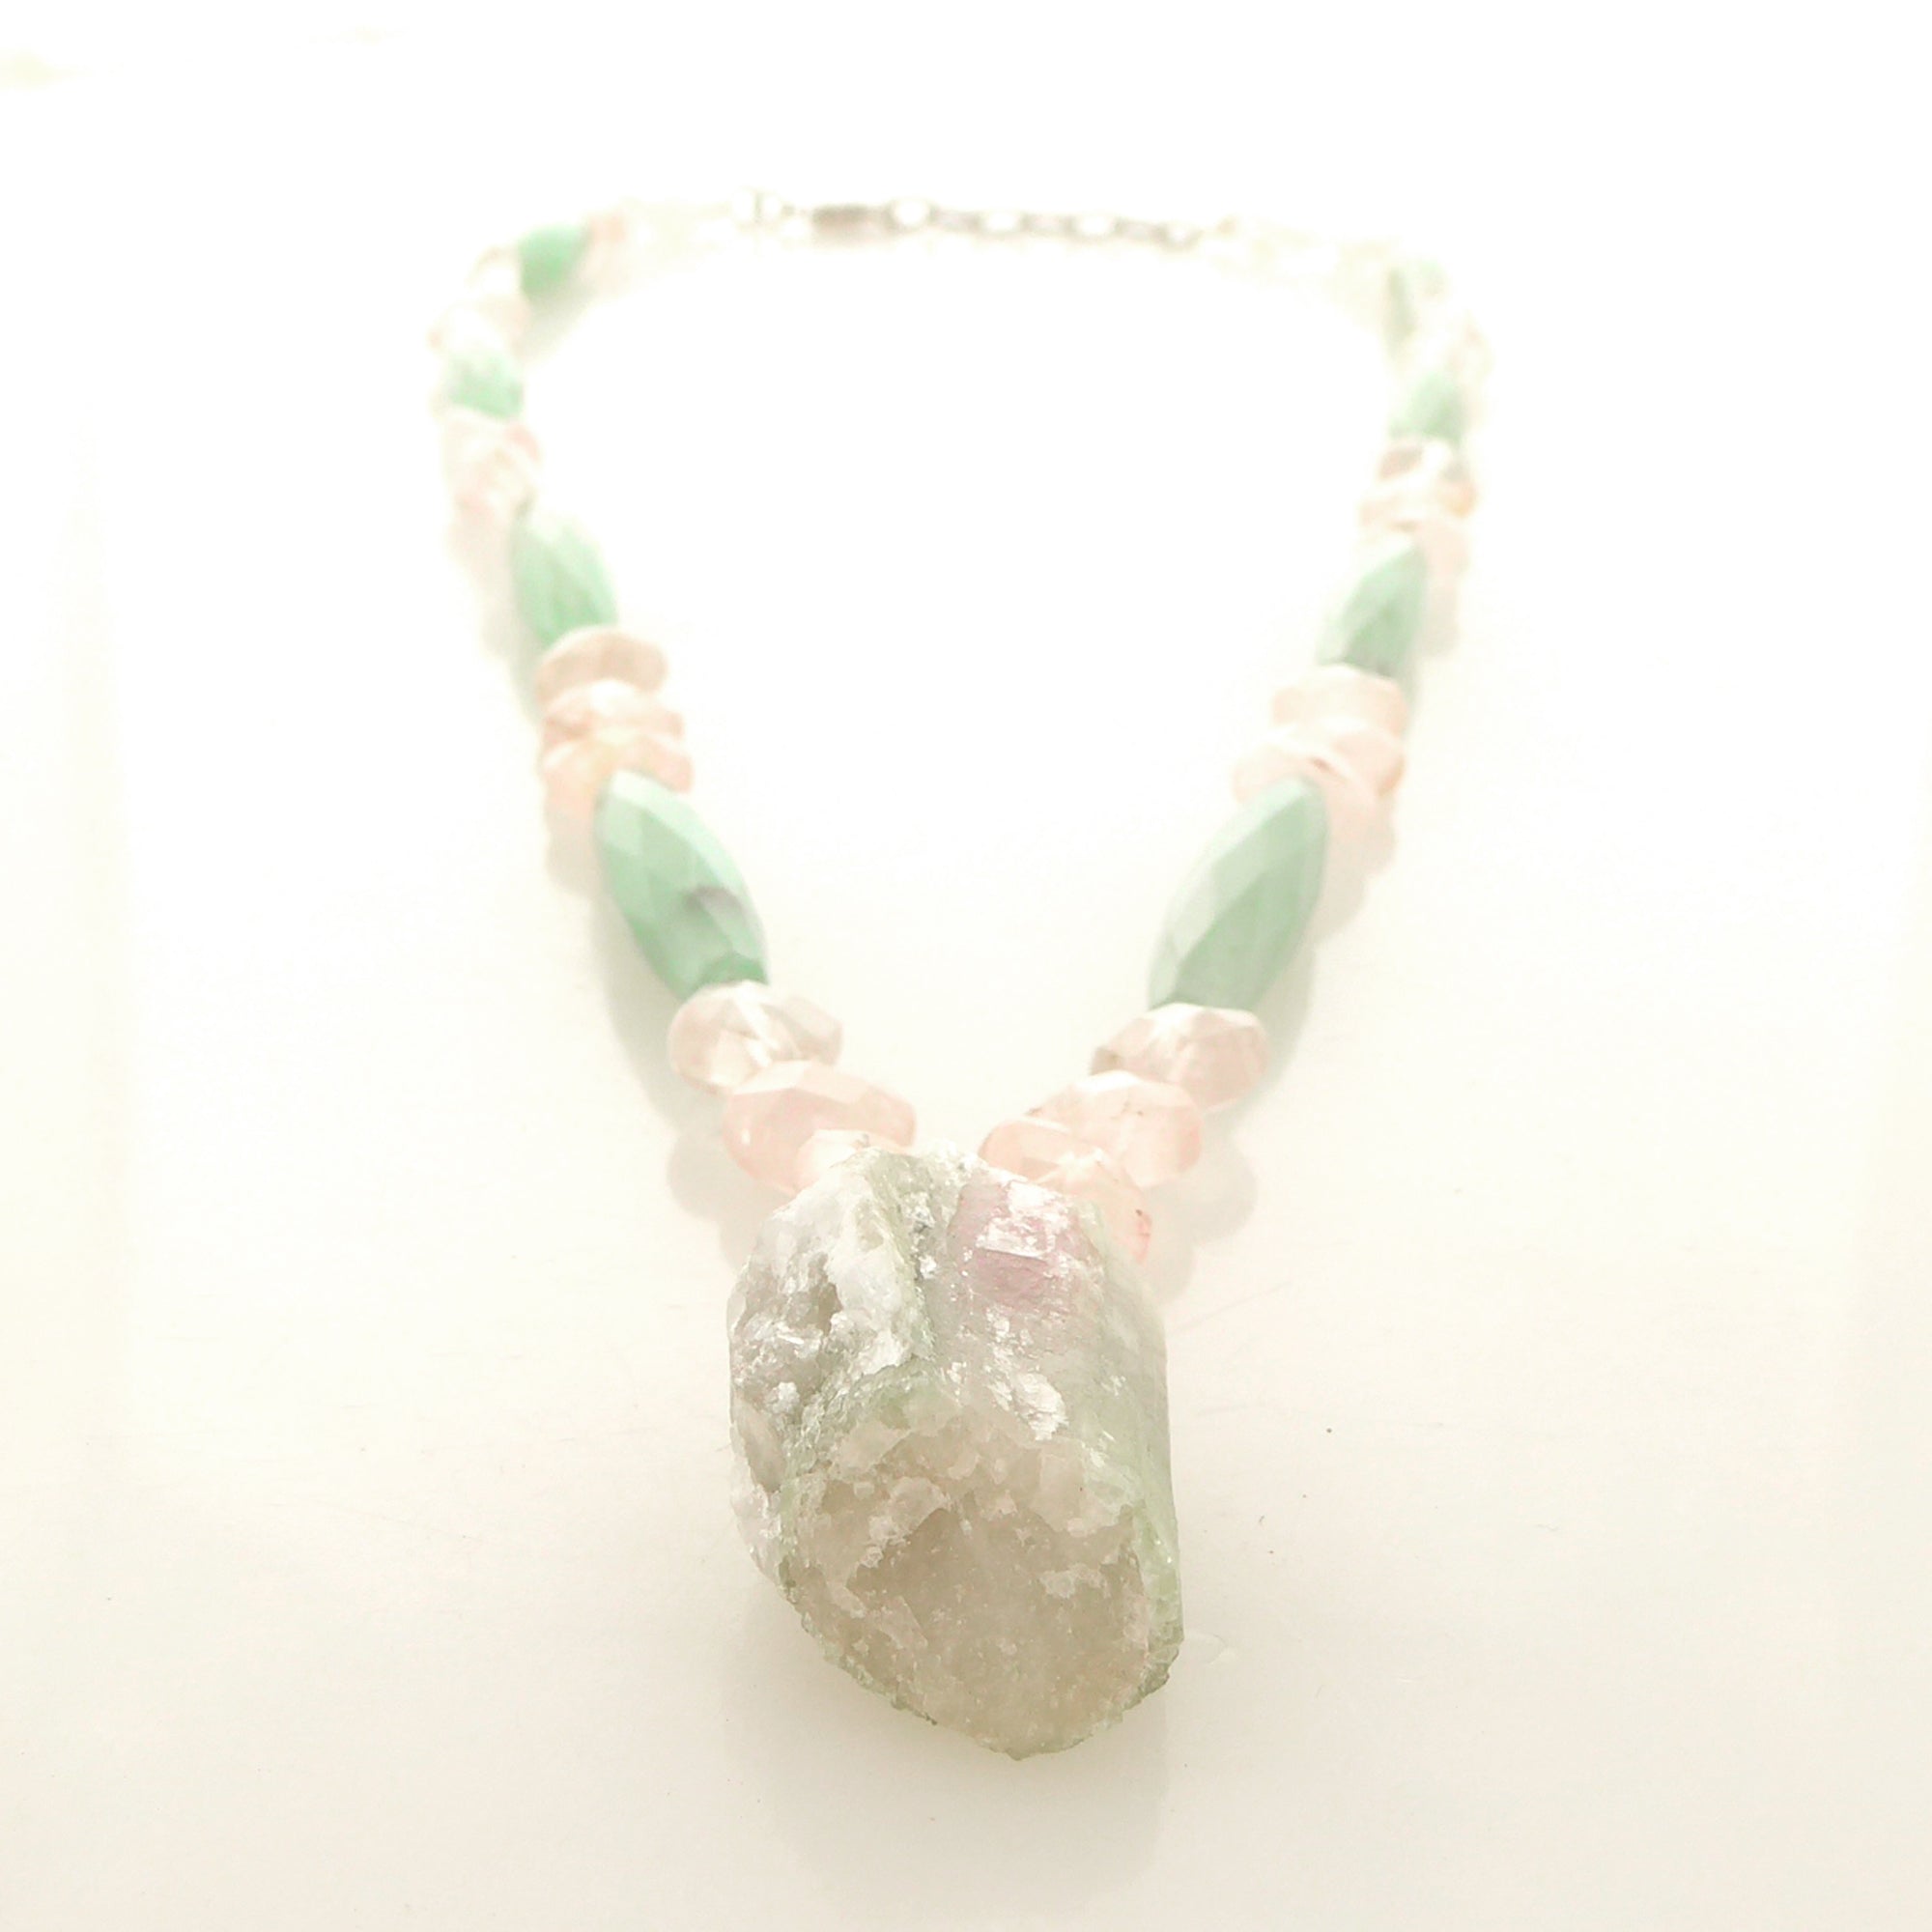 Watermelon tourmaline rose quartz green aventurine necklace by Jenny Dayco 3